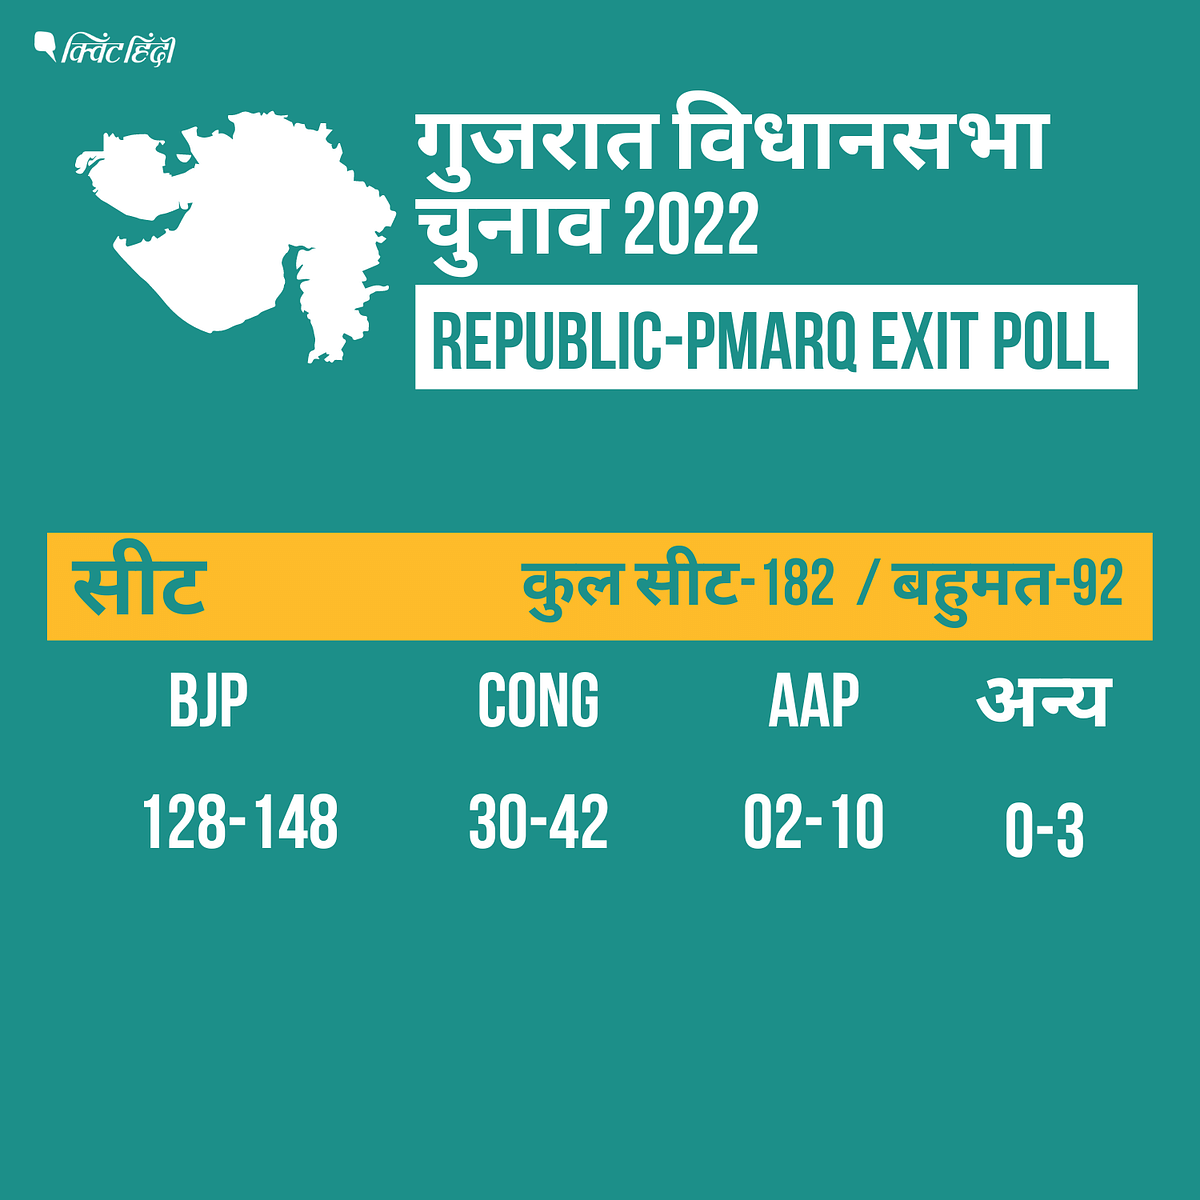 Gujarat Election Exit Poll Results: Republic -PMARQ के एग्जिट पोल के मुताबिक गुजरात में बीजेपी को बहुमत